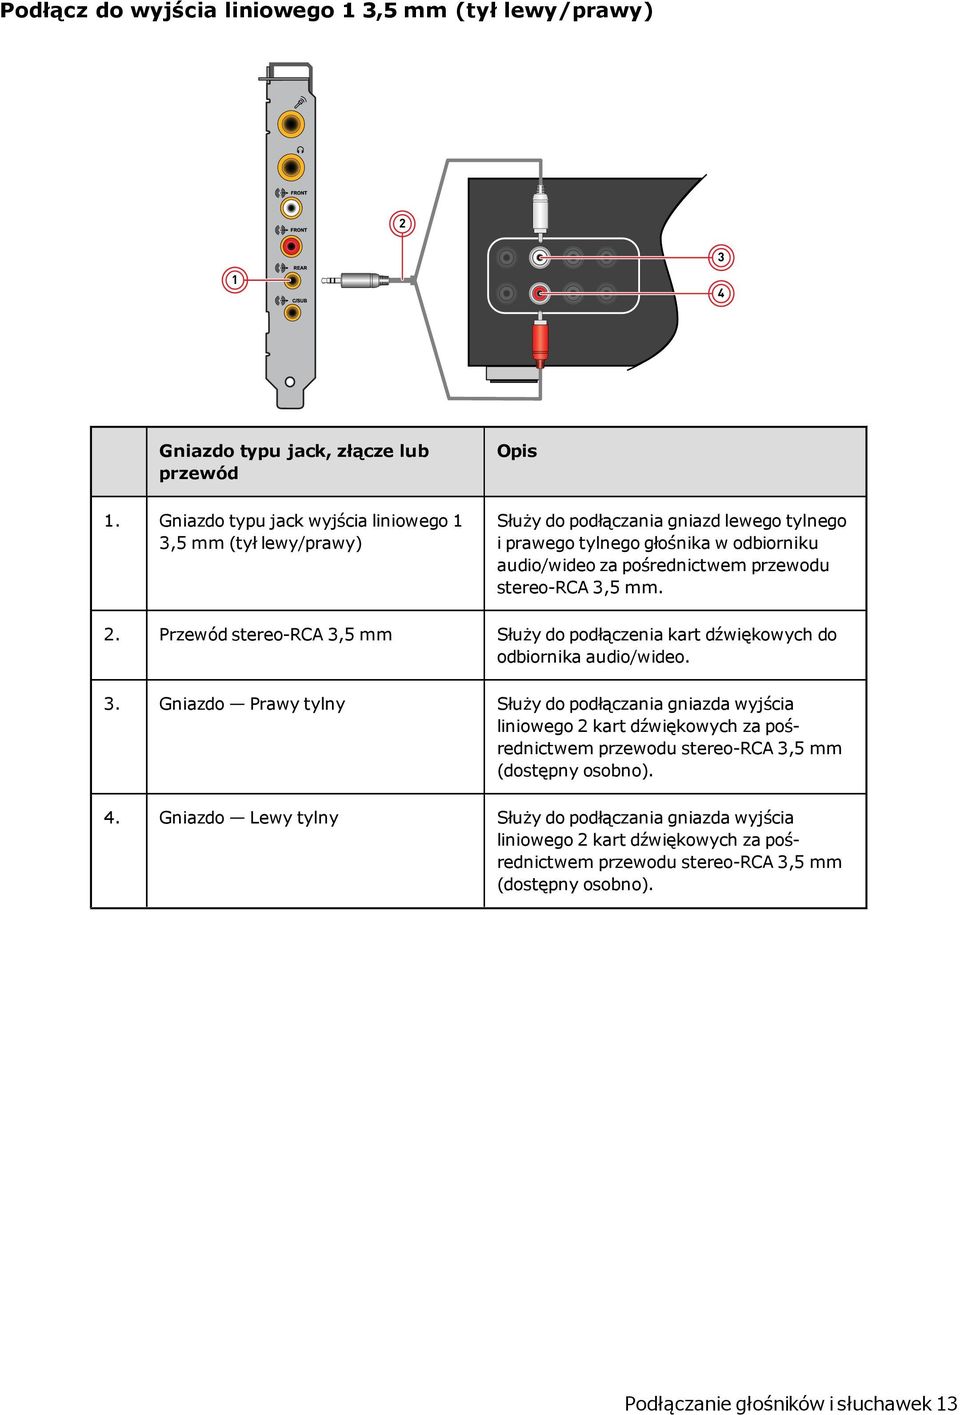 przewodu stereo-rca 3,5 mm. 2. Przewód stereo-rca 3,5 mm Służy do podłączenia kart dźwiękowych do odbiornika audio/wideo. 3. Gniazdo Prawy tylny Służy do podłączania gniazda wyjścia liniowego 2 kart dźwiękowych za pośrednictwem przewodu stereo-rca 3,5 mm (dostępny osobno).